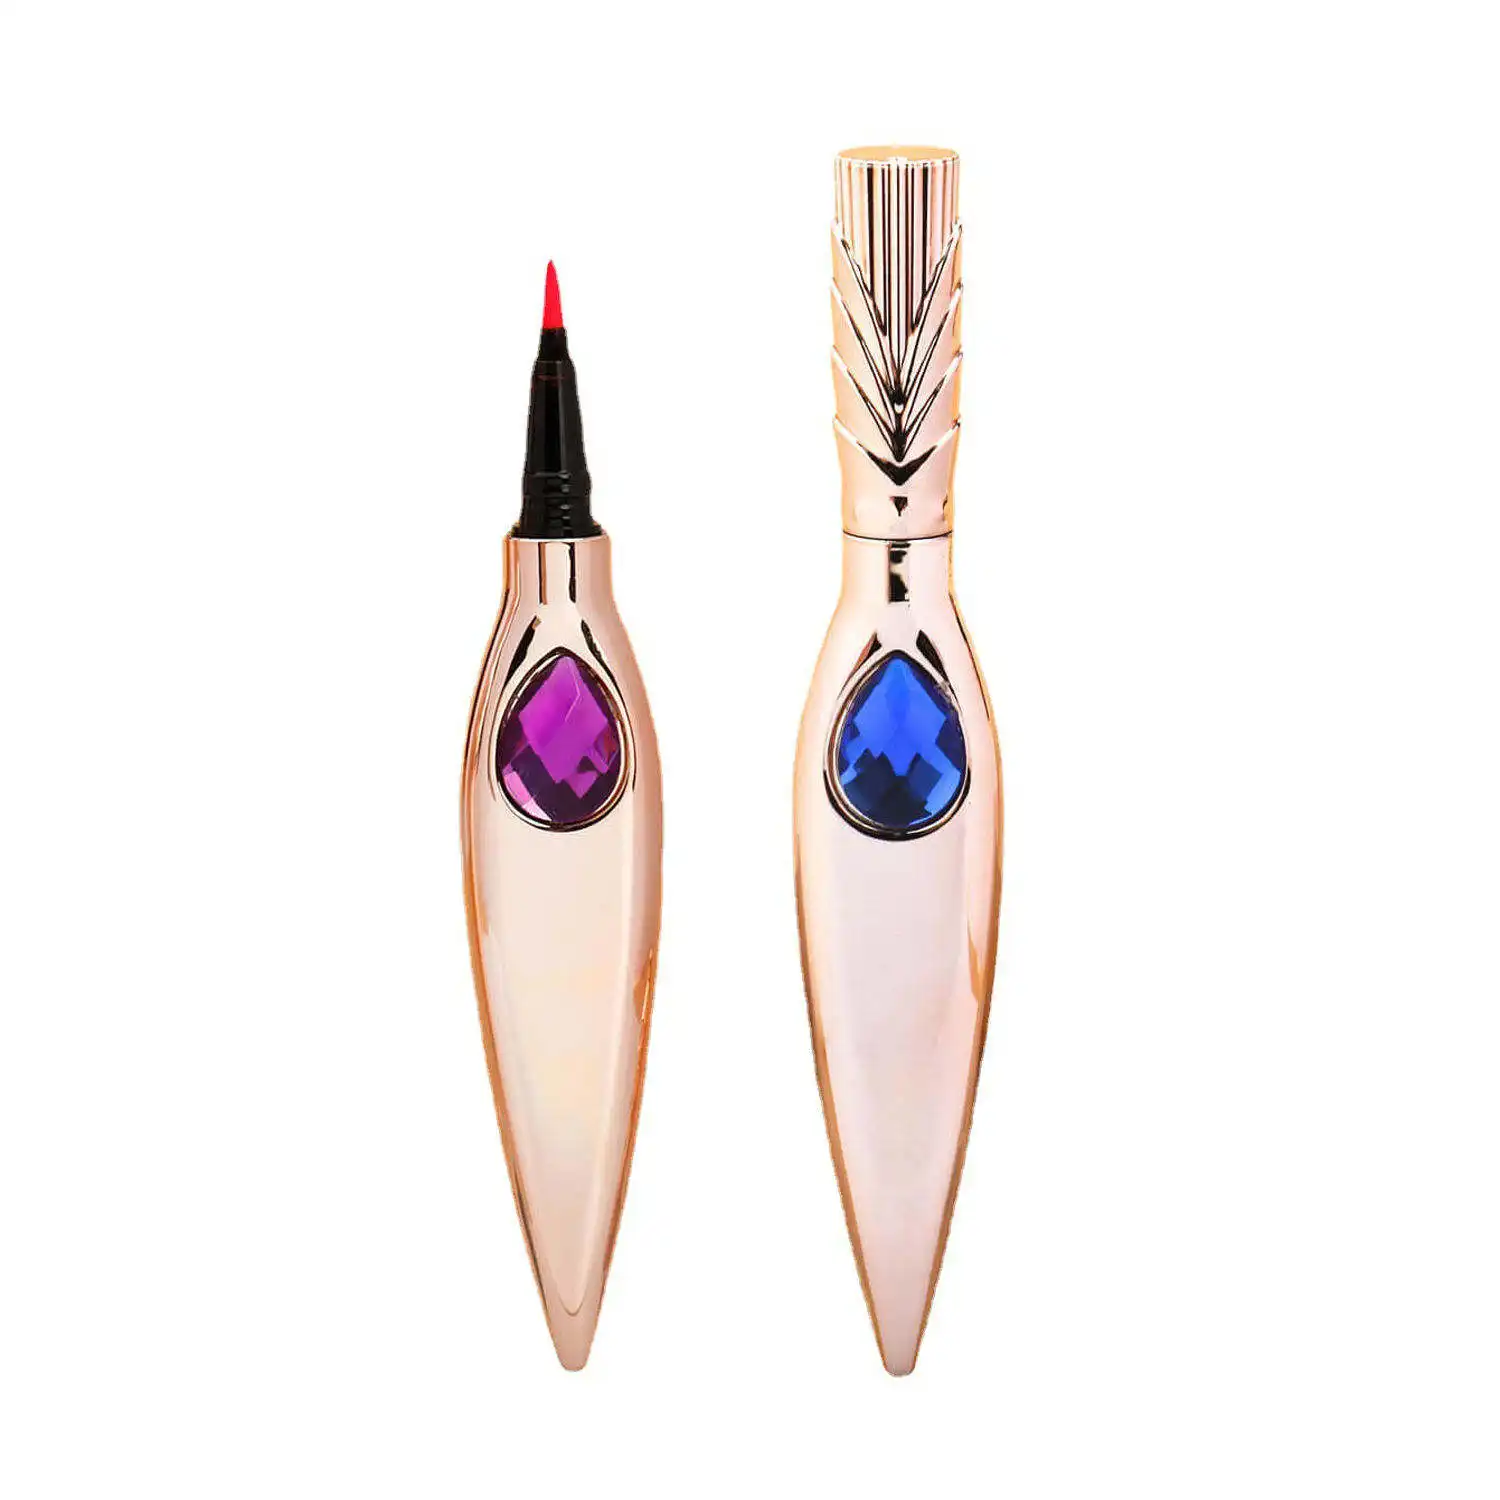 10 renkler uzun ömürlü elmas dekorasyon yüksek Pigment su geçirmez jel göz kalemi renkli makyaj sıvı Eyeliner kalem